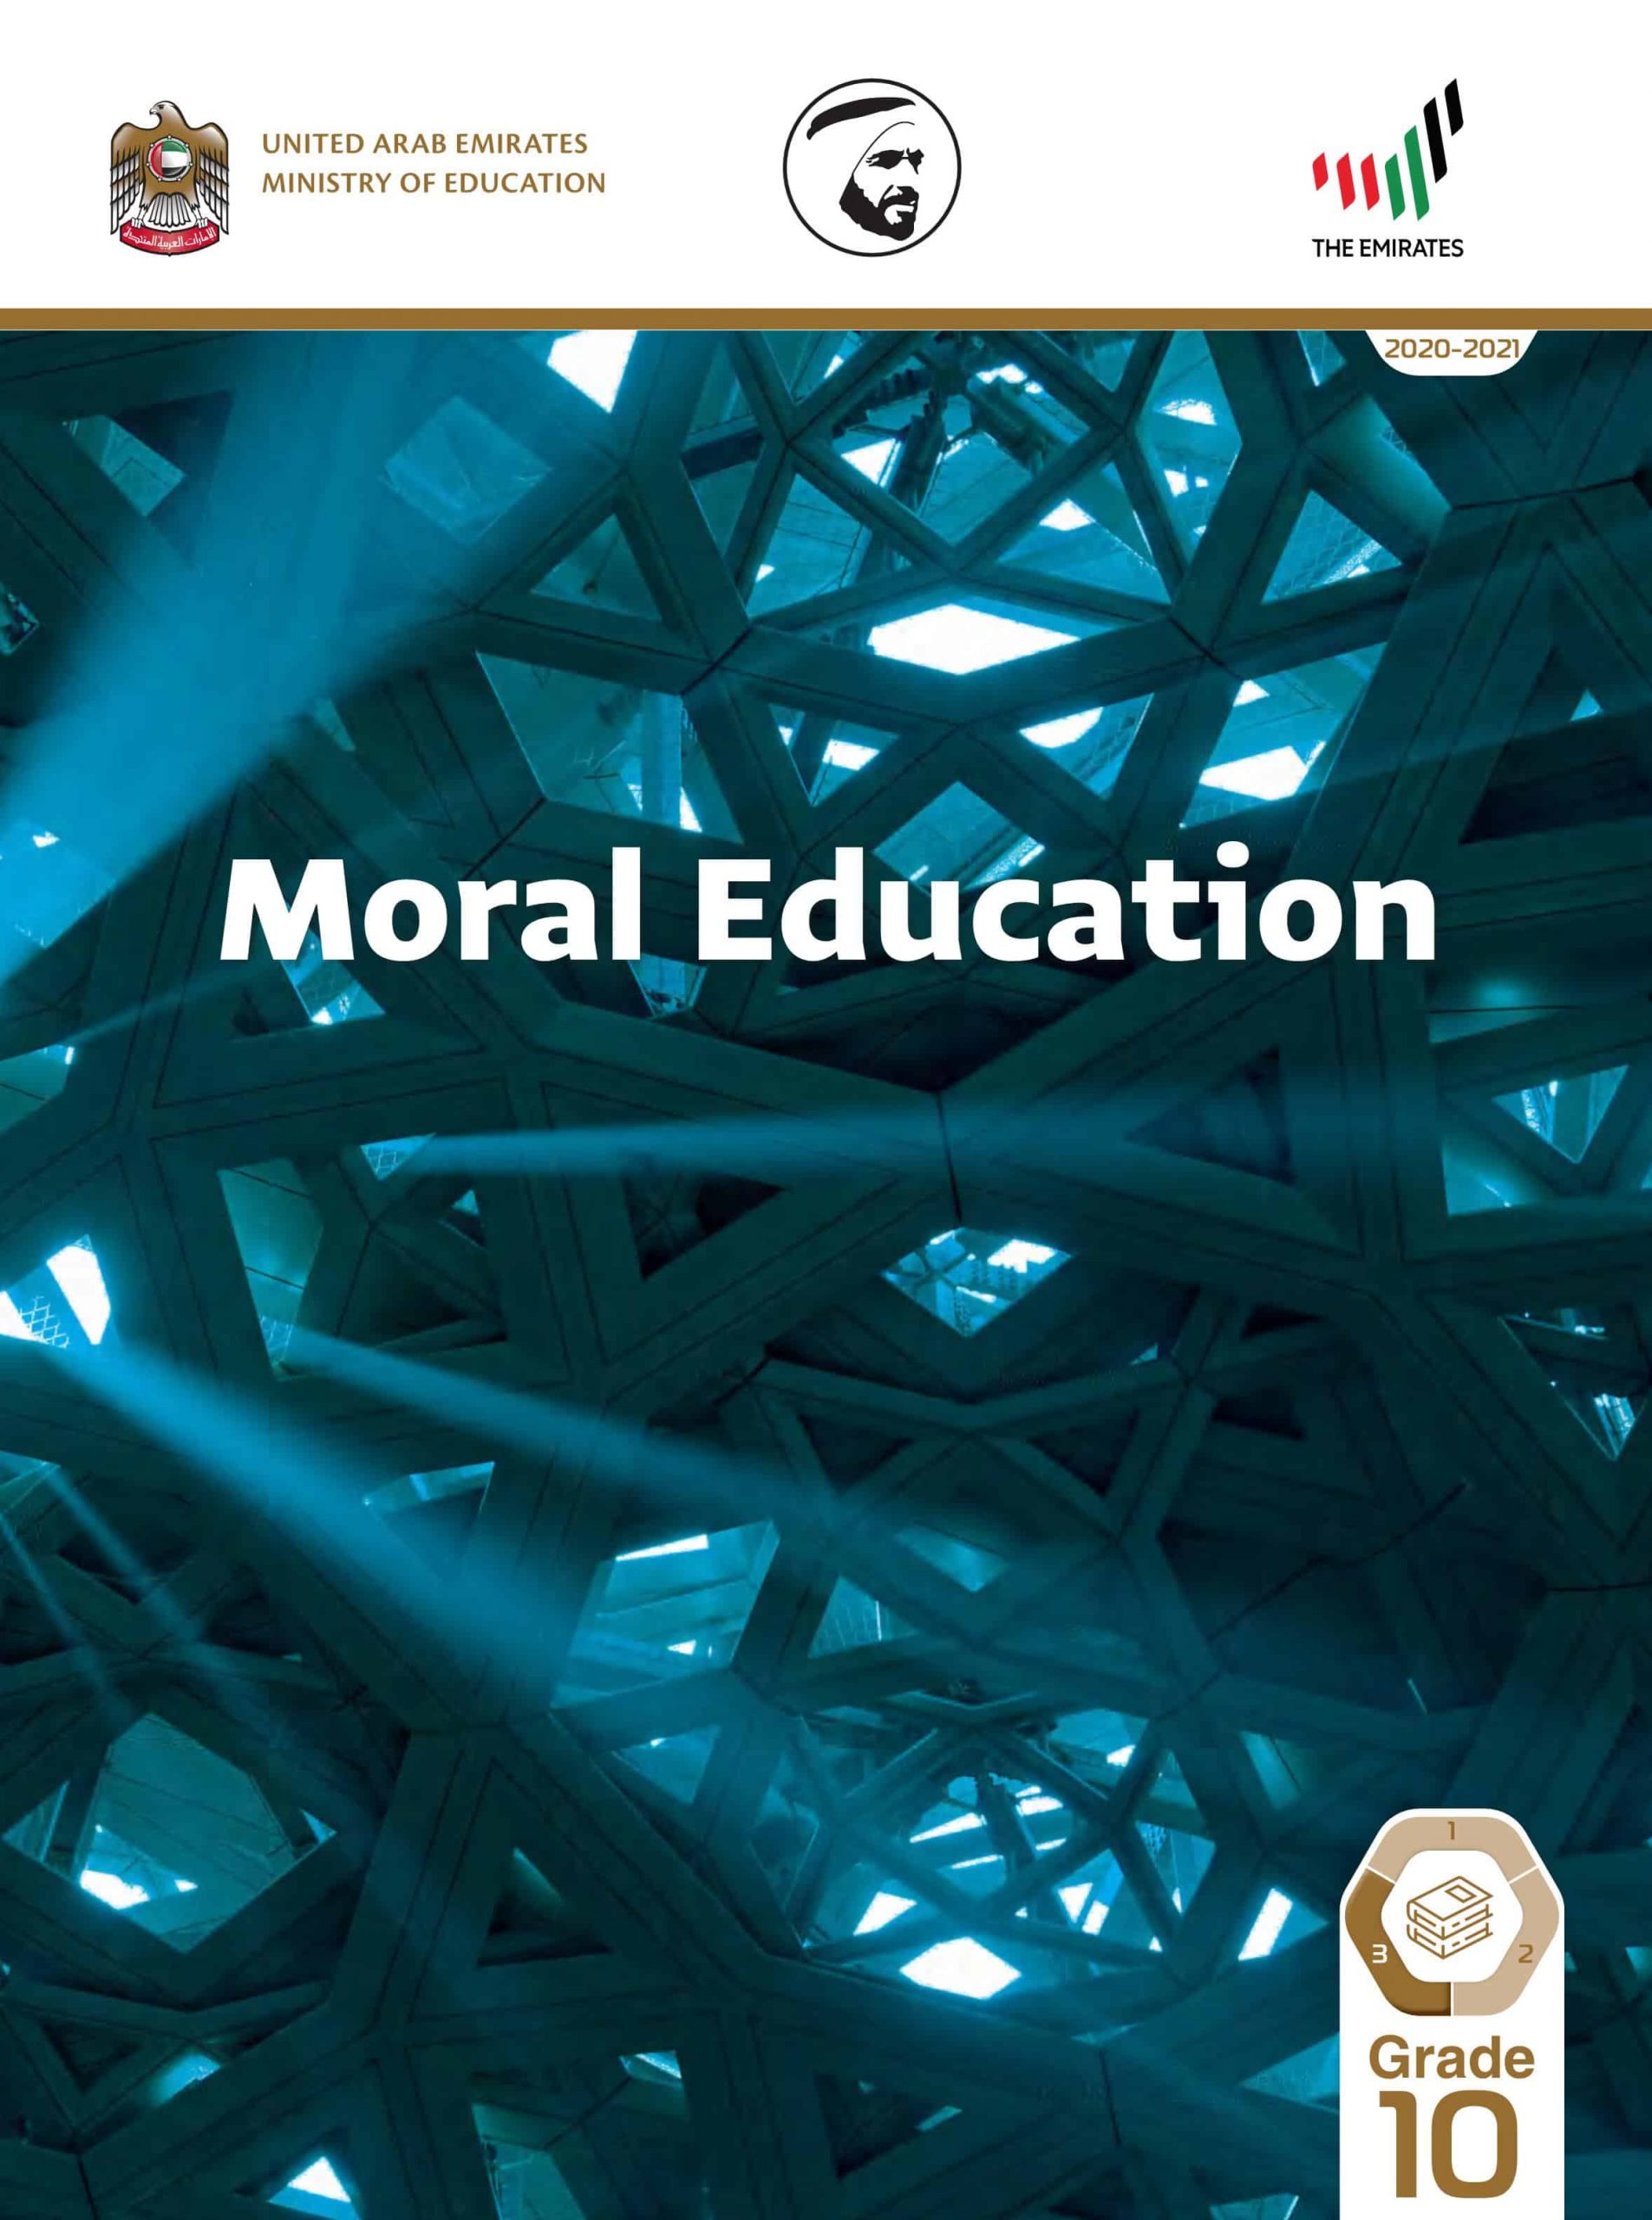 كتاب الطالب بالإنجليزي الفصل الدراسي الثالث 2020-2021 الصف العاشر مادة التربية الأخلاقية